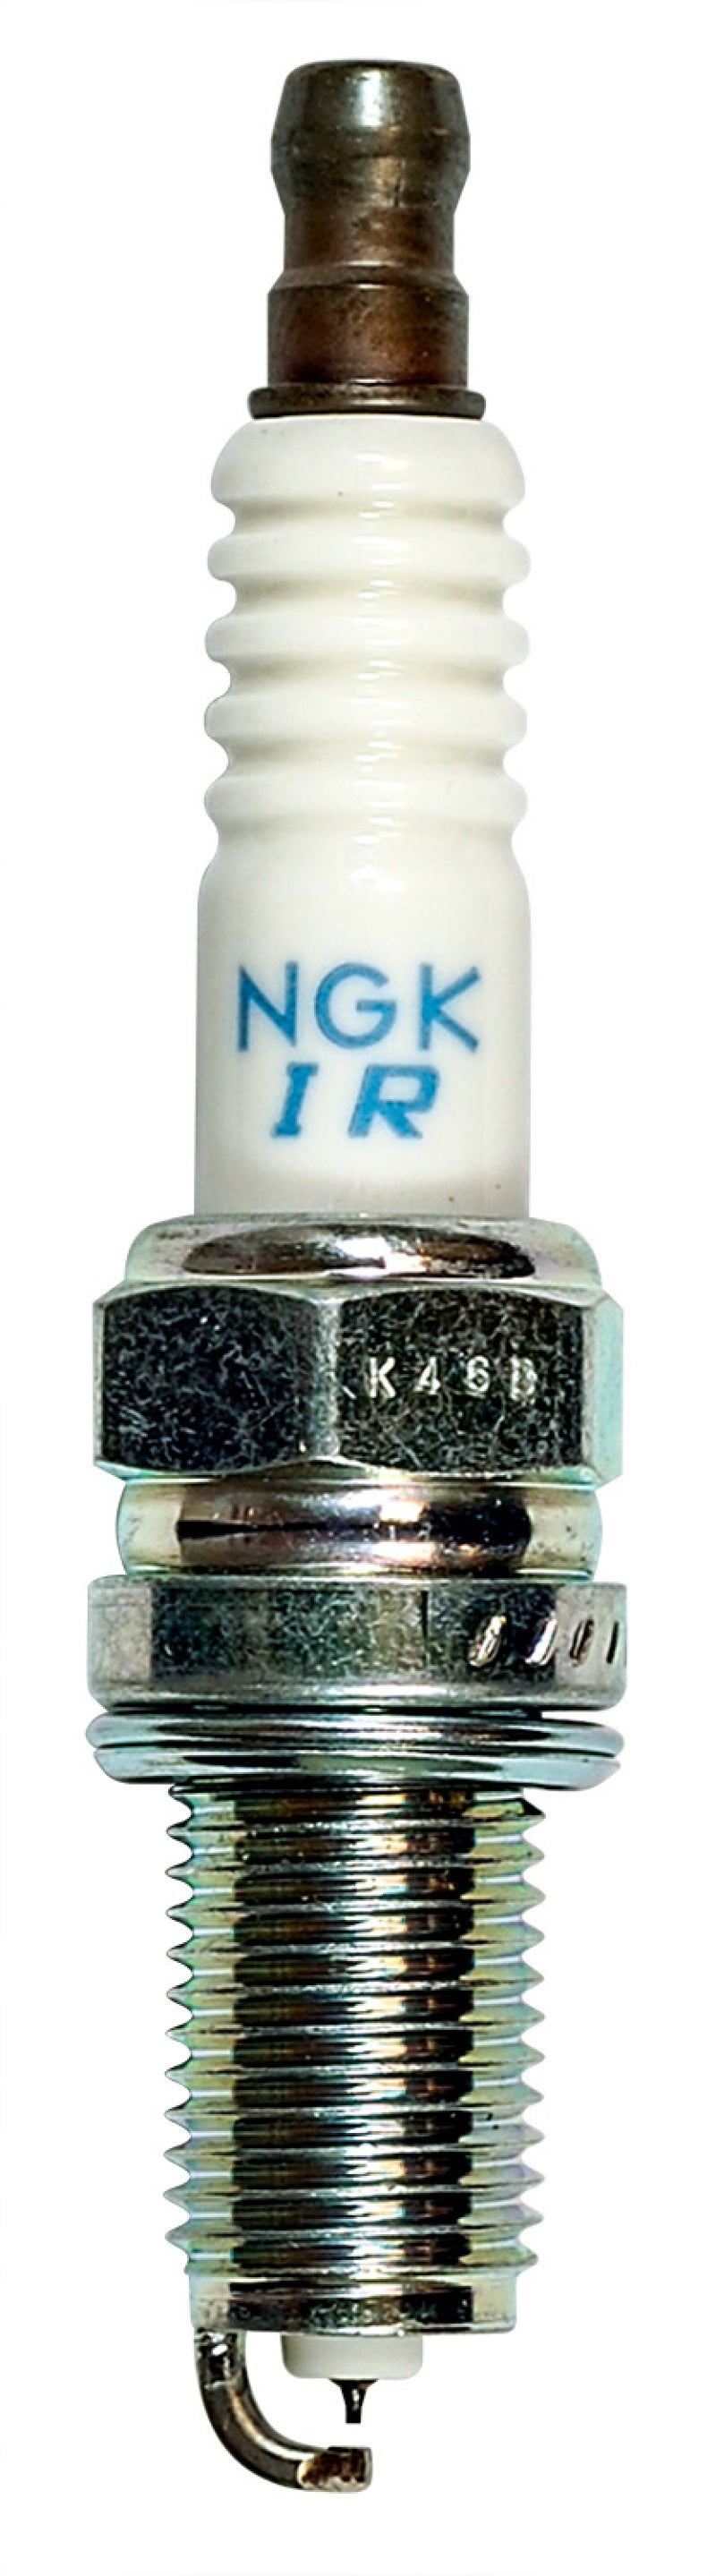 NGK Iridium/Platinum Spark Plug Box of 4 (SIKR9A7) - eliteracefab.com